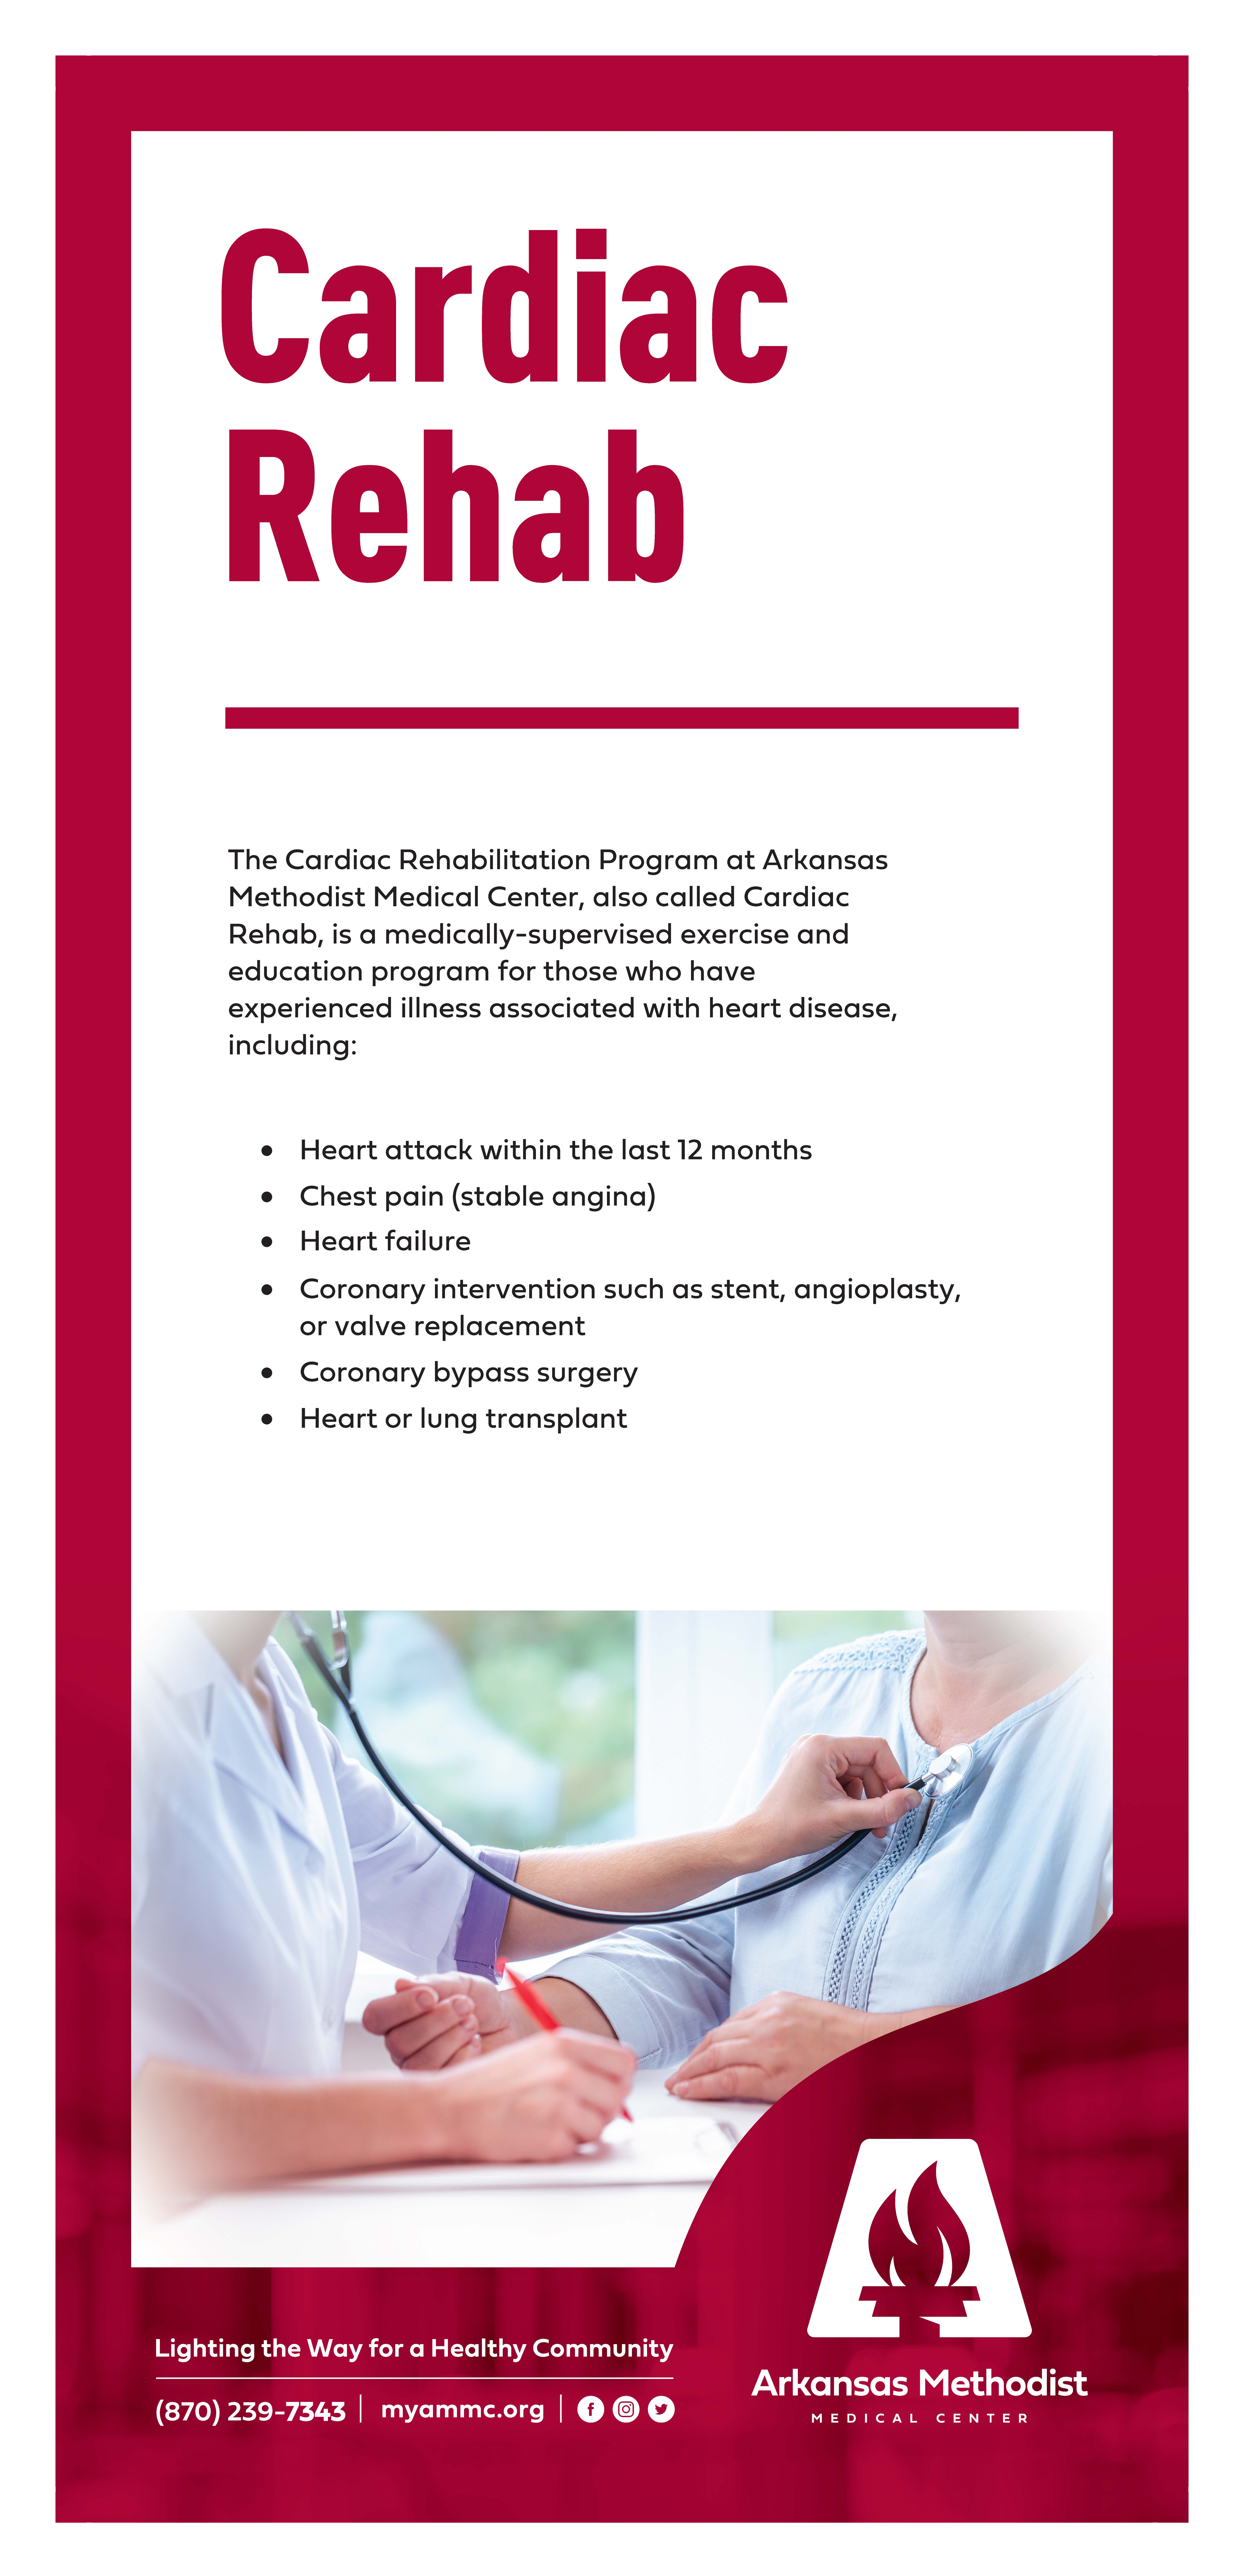 Cardiac rehab rack card print for healt fair booth page 1